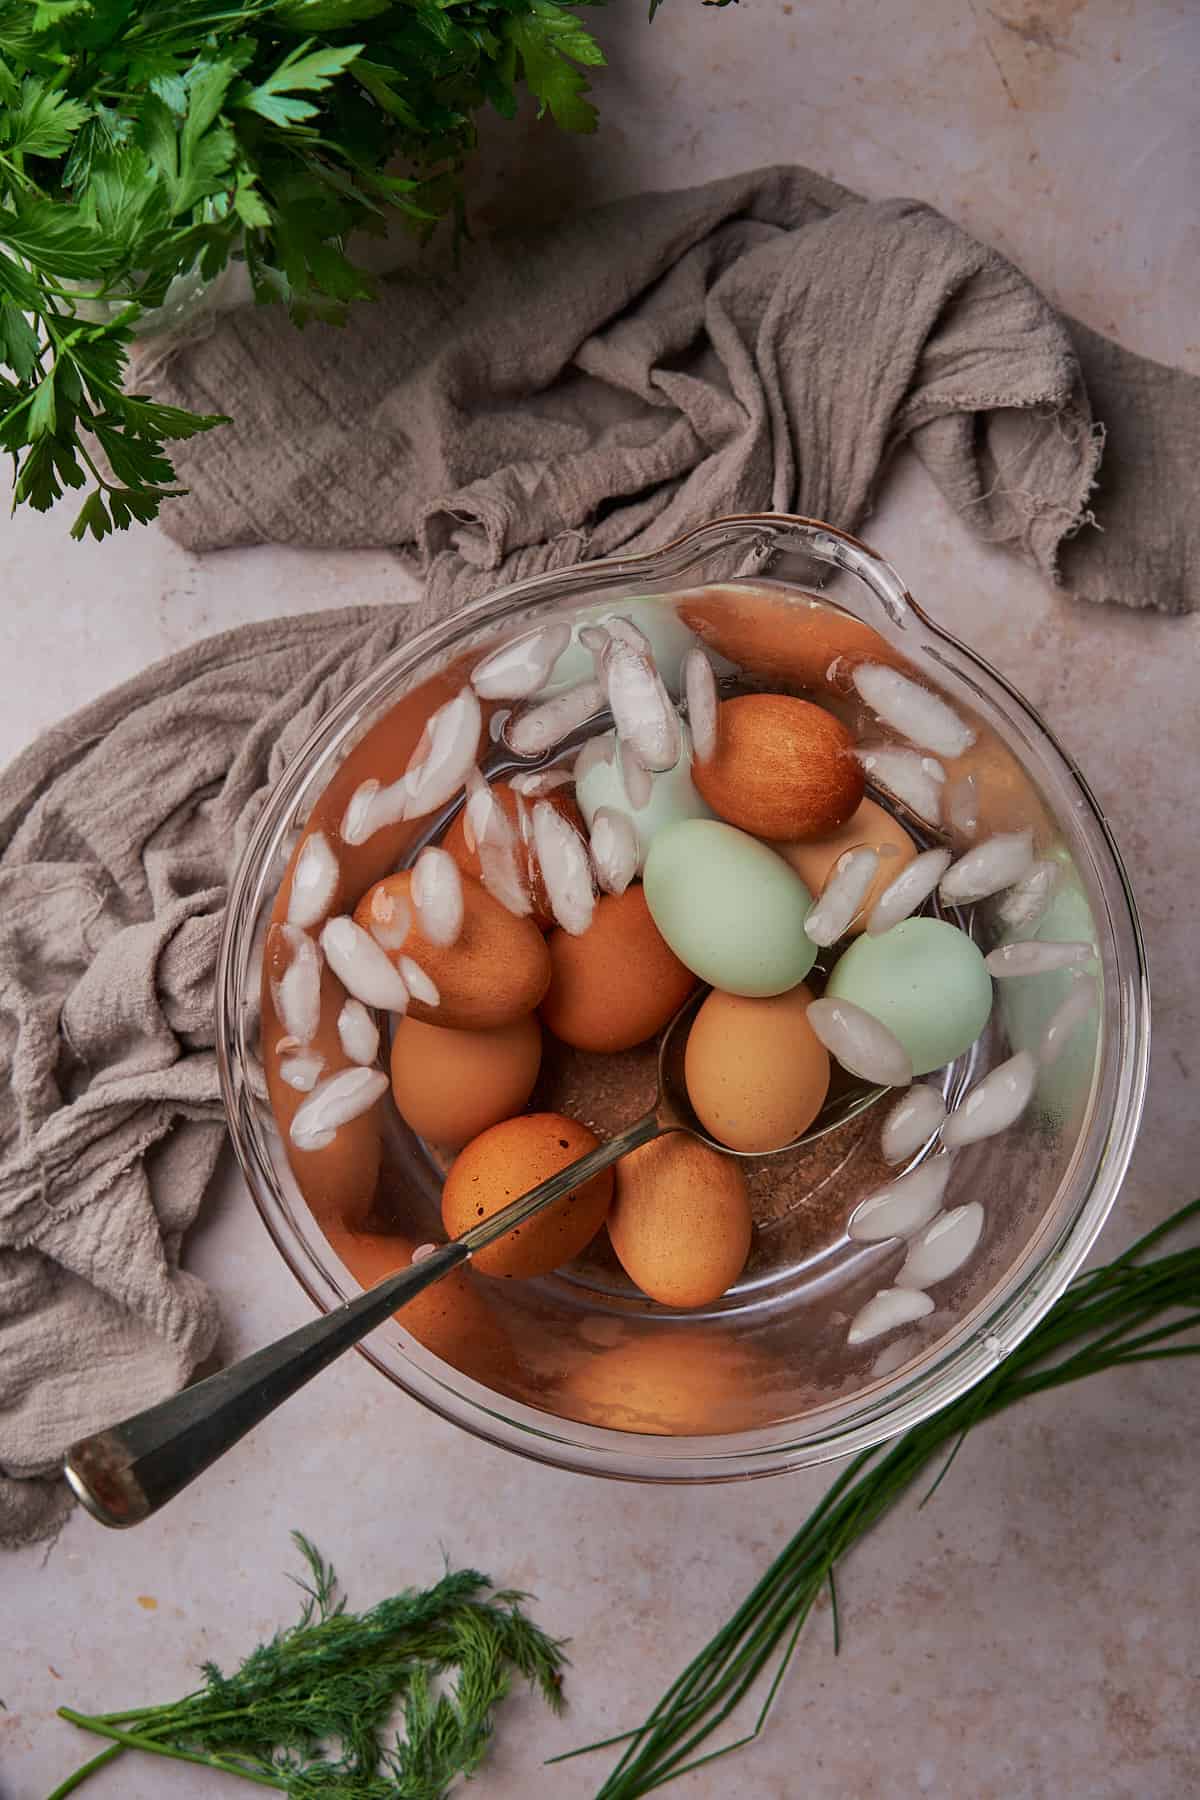 eggs in an ice bath. 